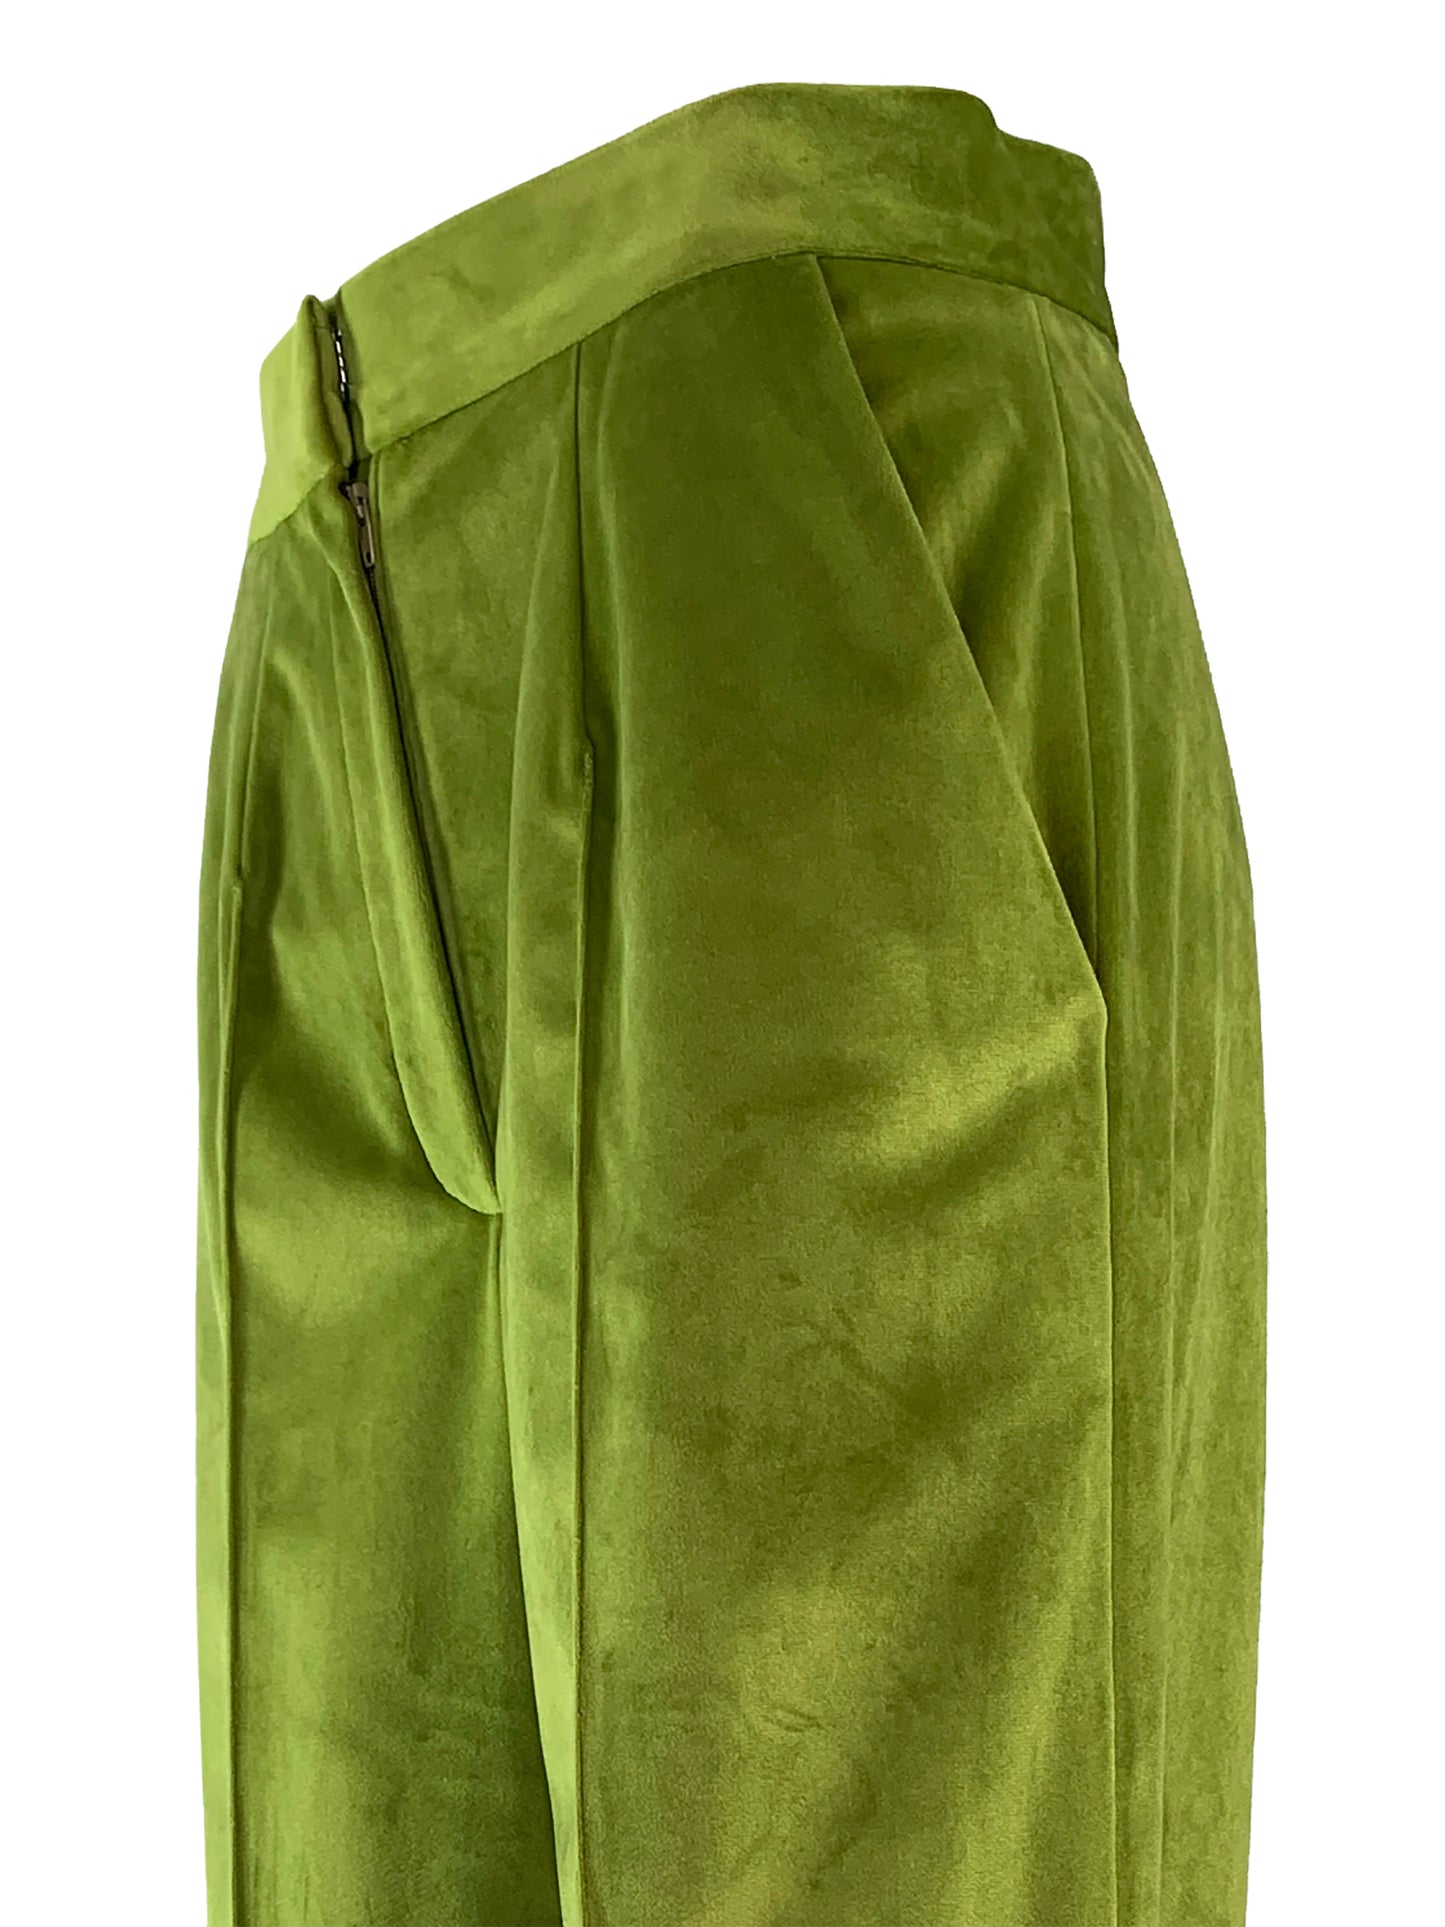 Olive green velvet trousers